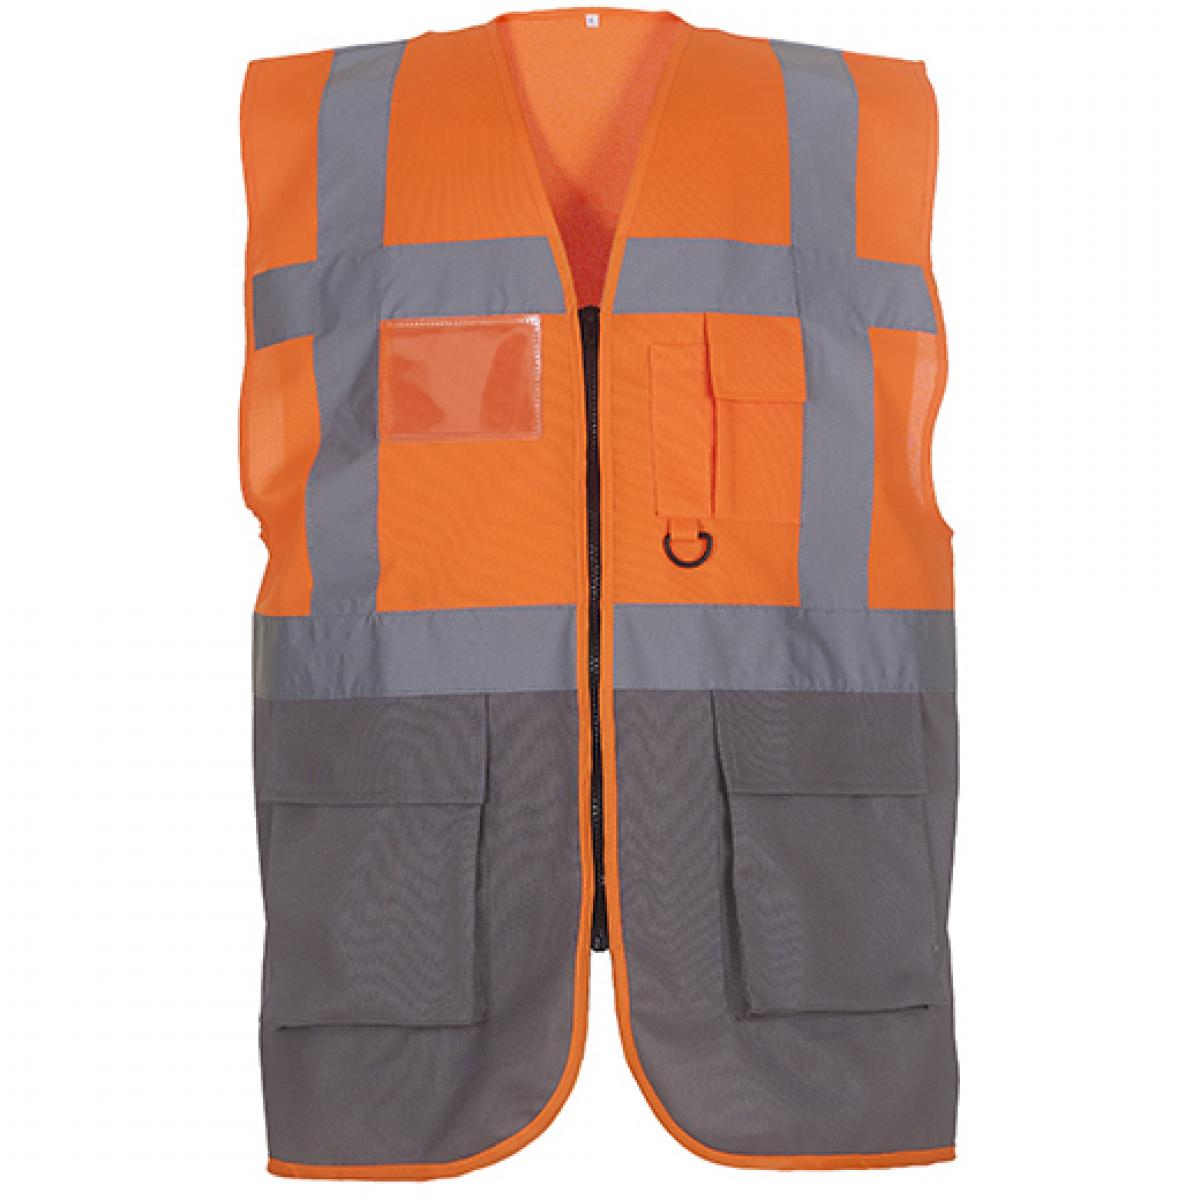 Hersteller: YOKO Herstellernummer: HVW801 Artikelbezeichnung: Herren Multi-Functional Executive Waistcoat Farbe: Hi-Vis Orange/Grey